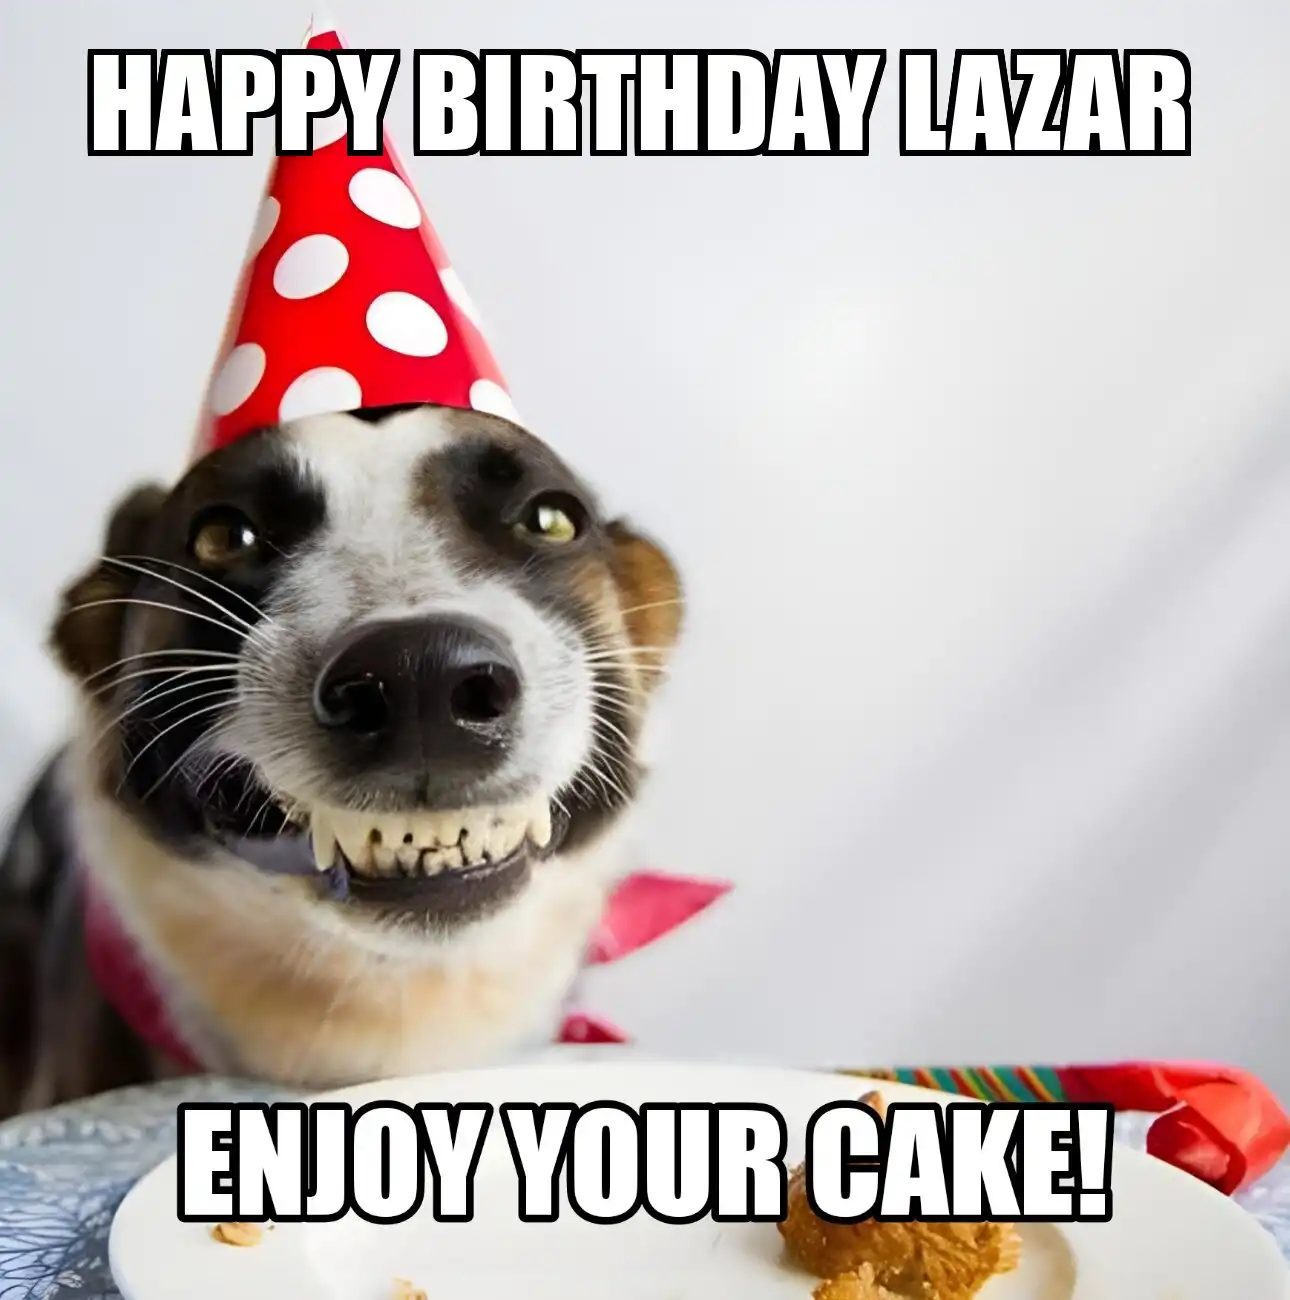 Happy Birthday Lazar Enjoy Your Cake Dog Meme